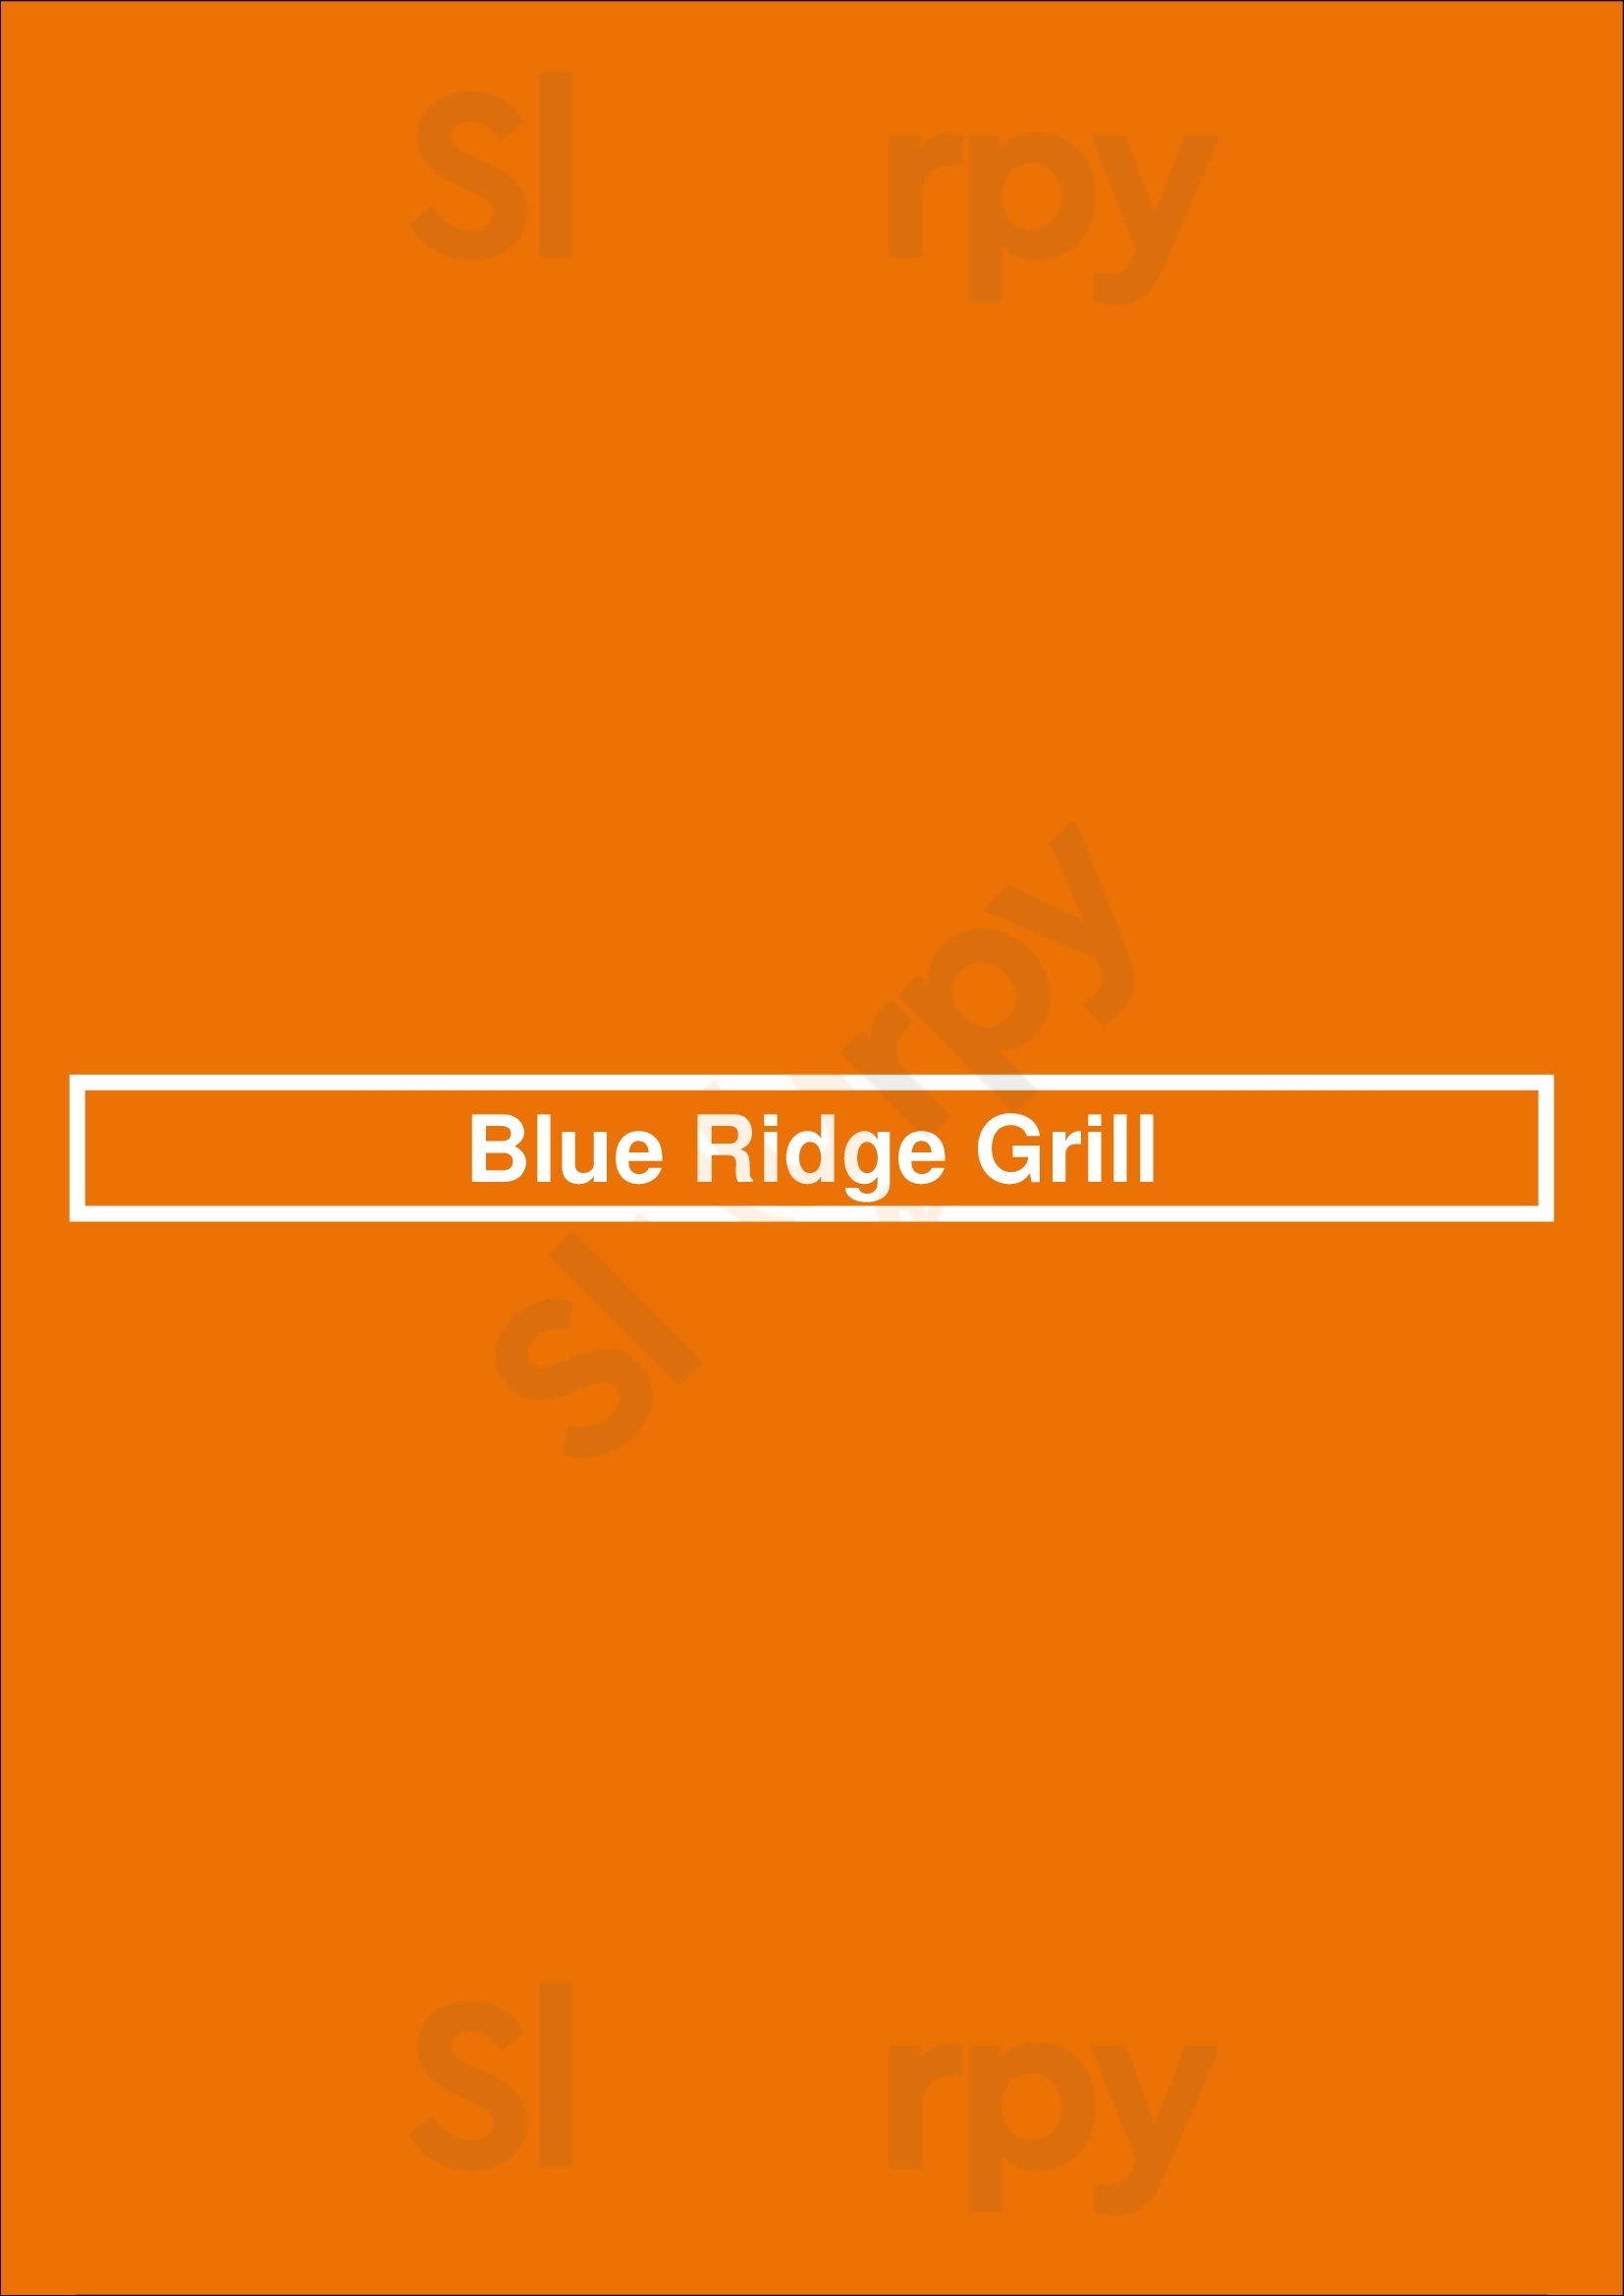 Blue Ridge Grill Atlanta Menu - 1